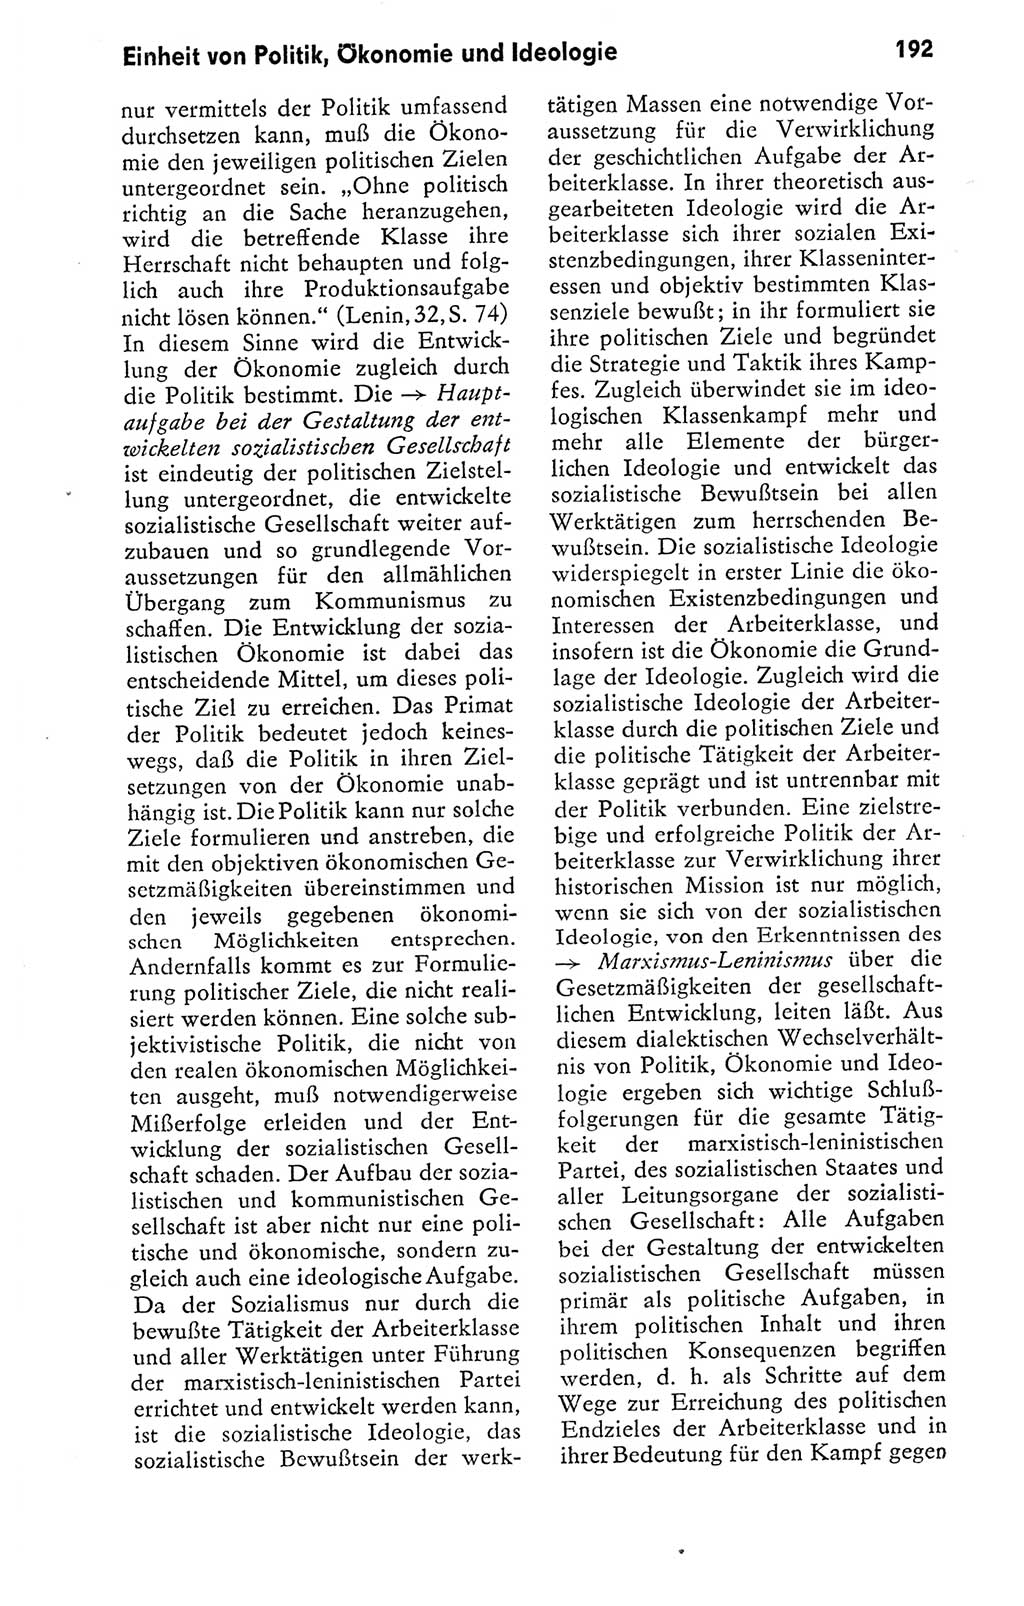 Kleines politisches Wörterbuch [Deutsche Demokratische Republik (DDR)] 1978, Seite 192 (Kl. pol. Wb. DDR 1978, S. 192)